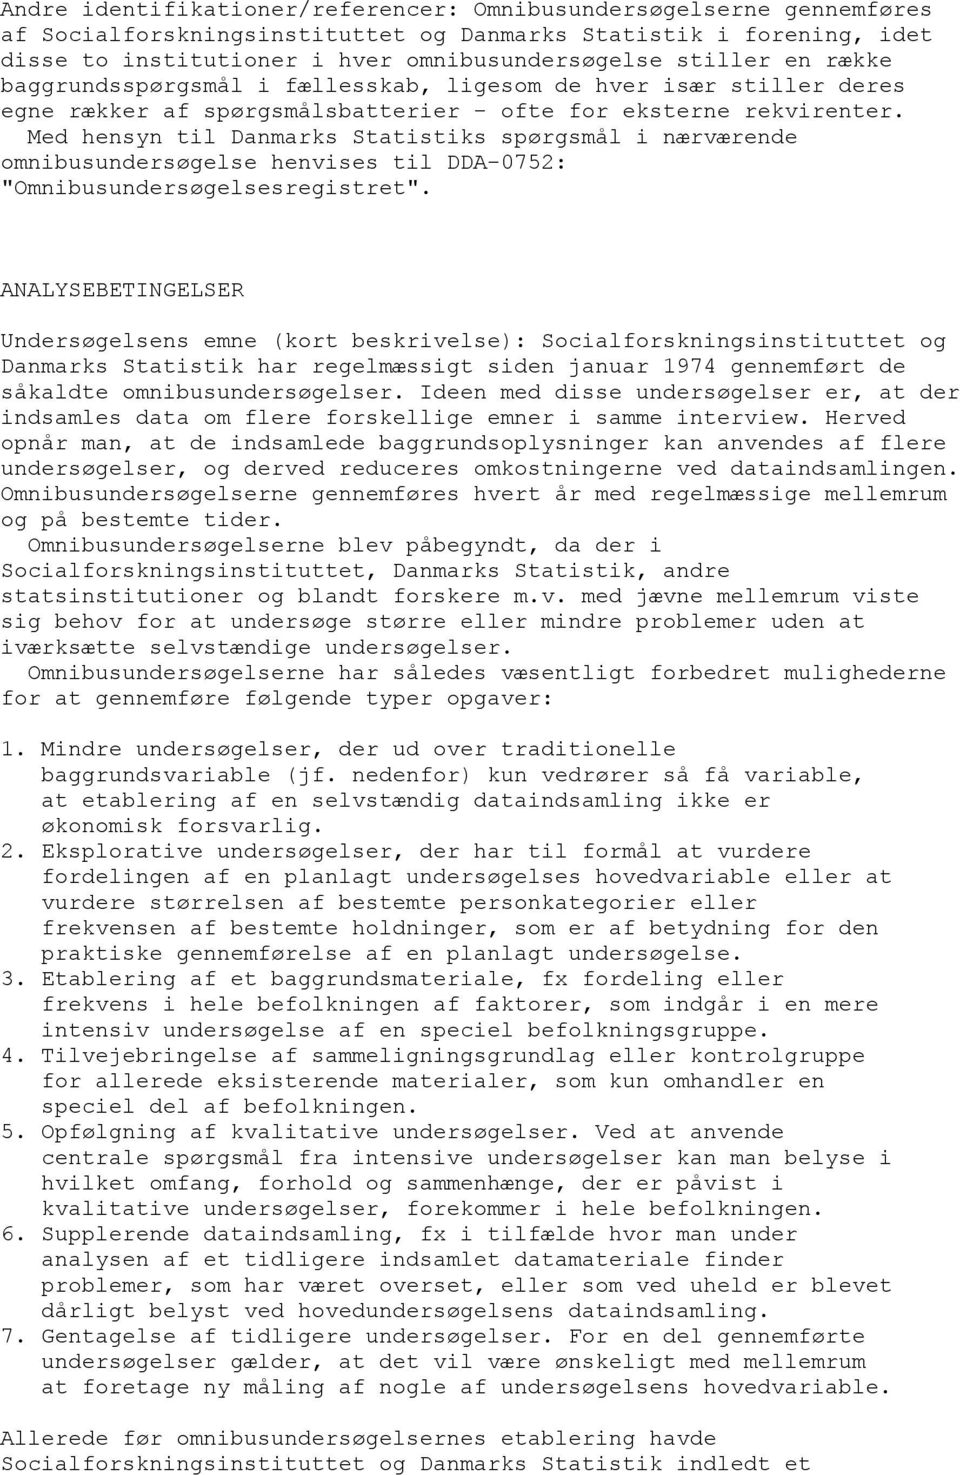 Med hensyn til Danmarks Statistiks spørgsmål i nærværende omnibusundersøgelse henvises til DDA-0752: "Omnibusundersøgelsesregistret".